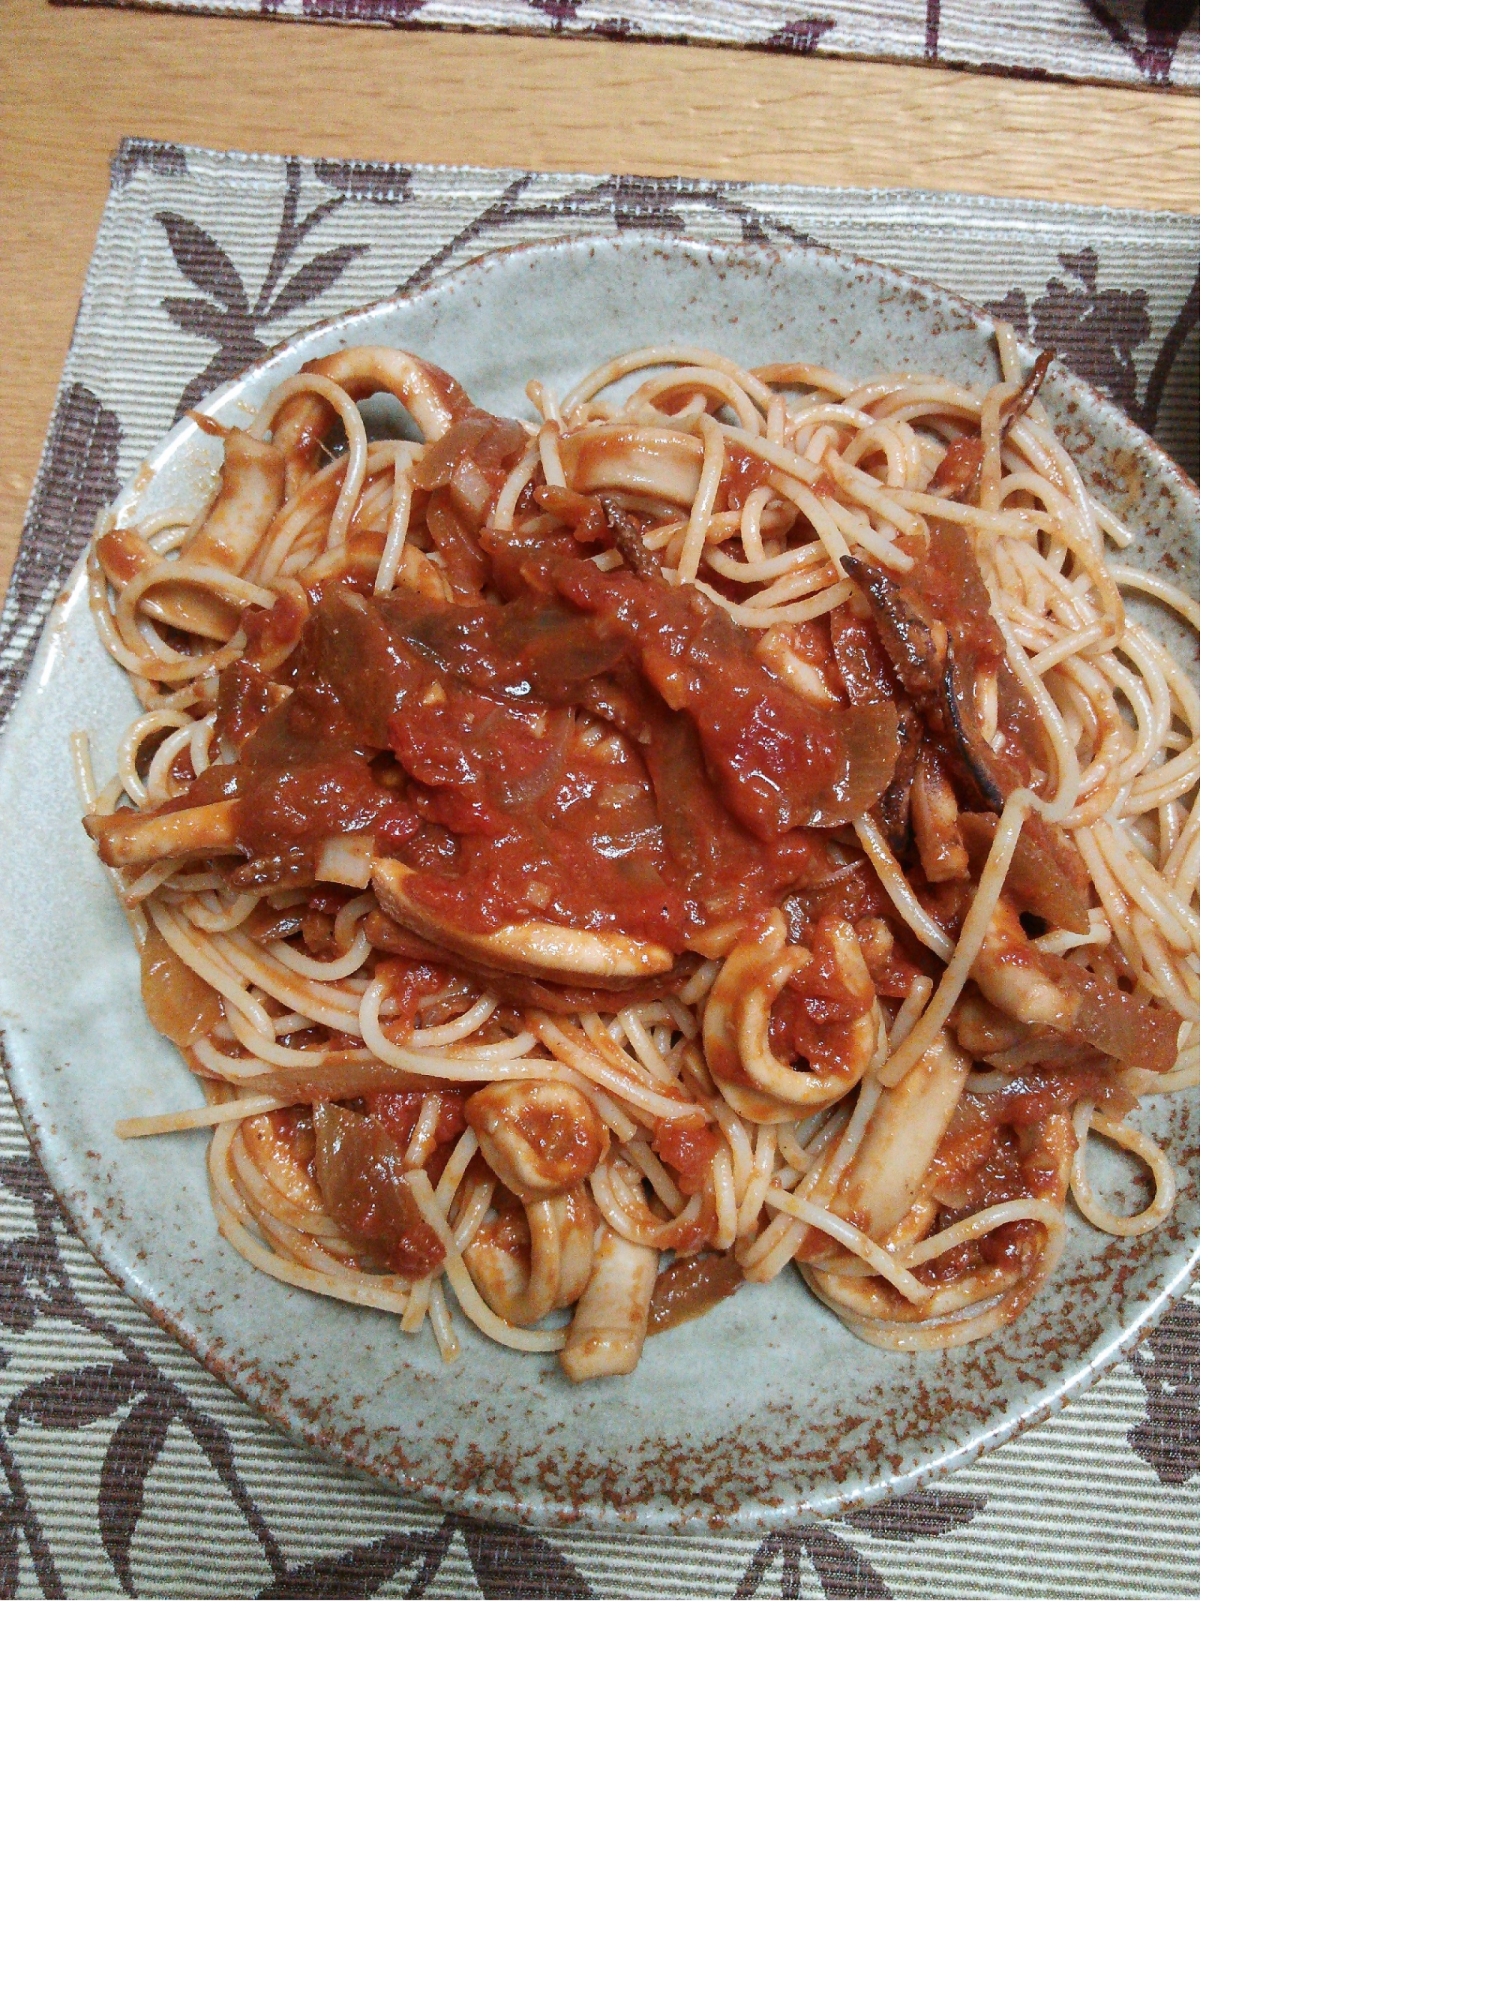 イカとイタリアントマトのスパゲティー